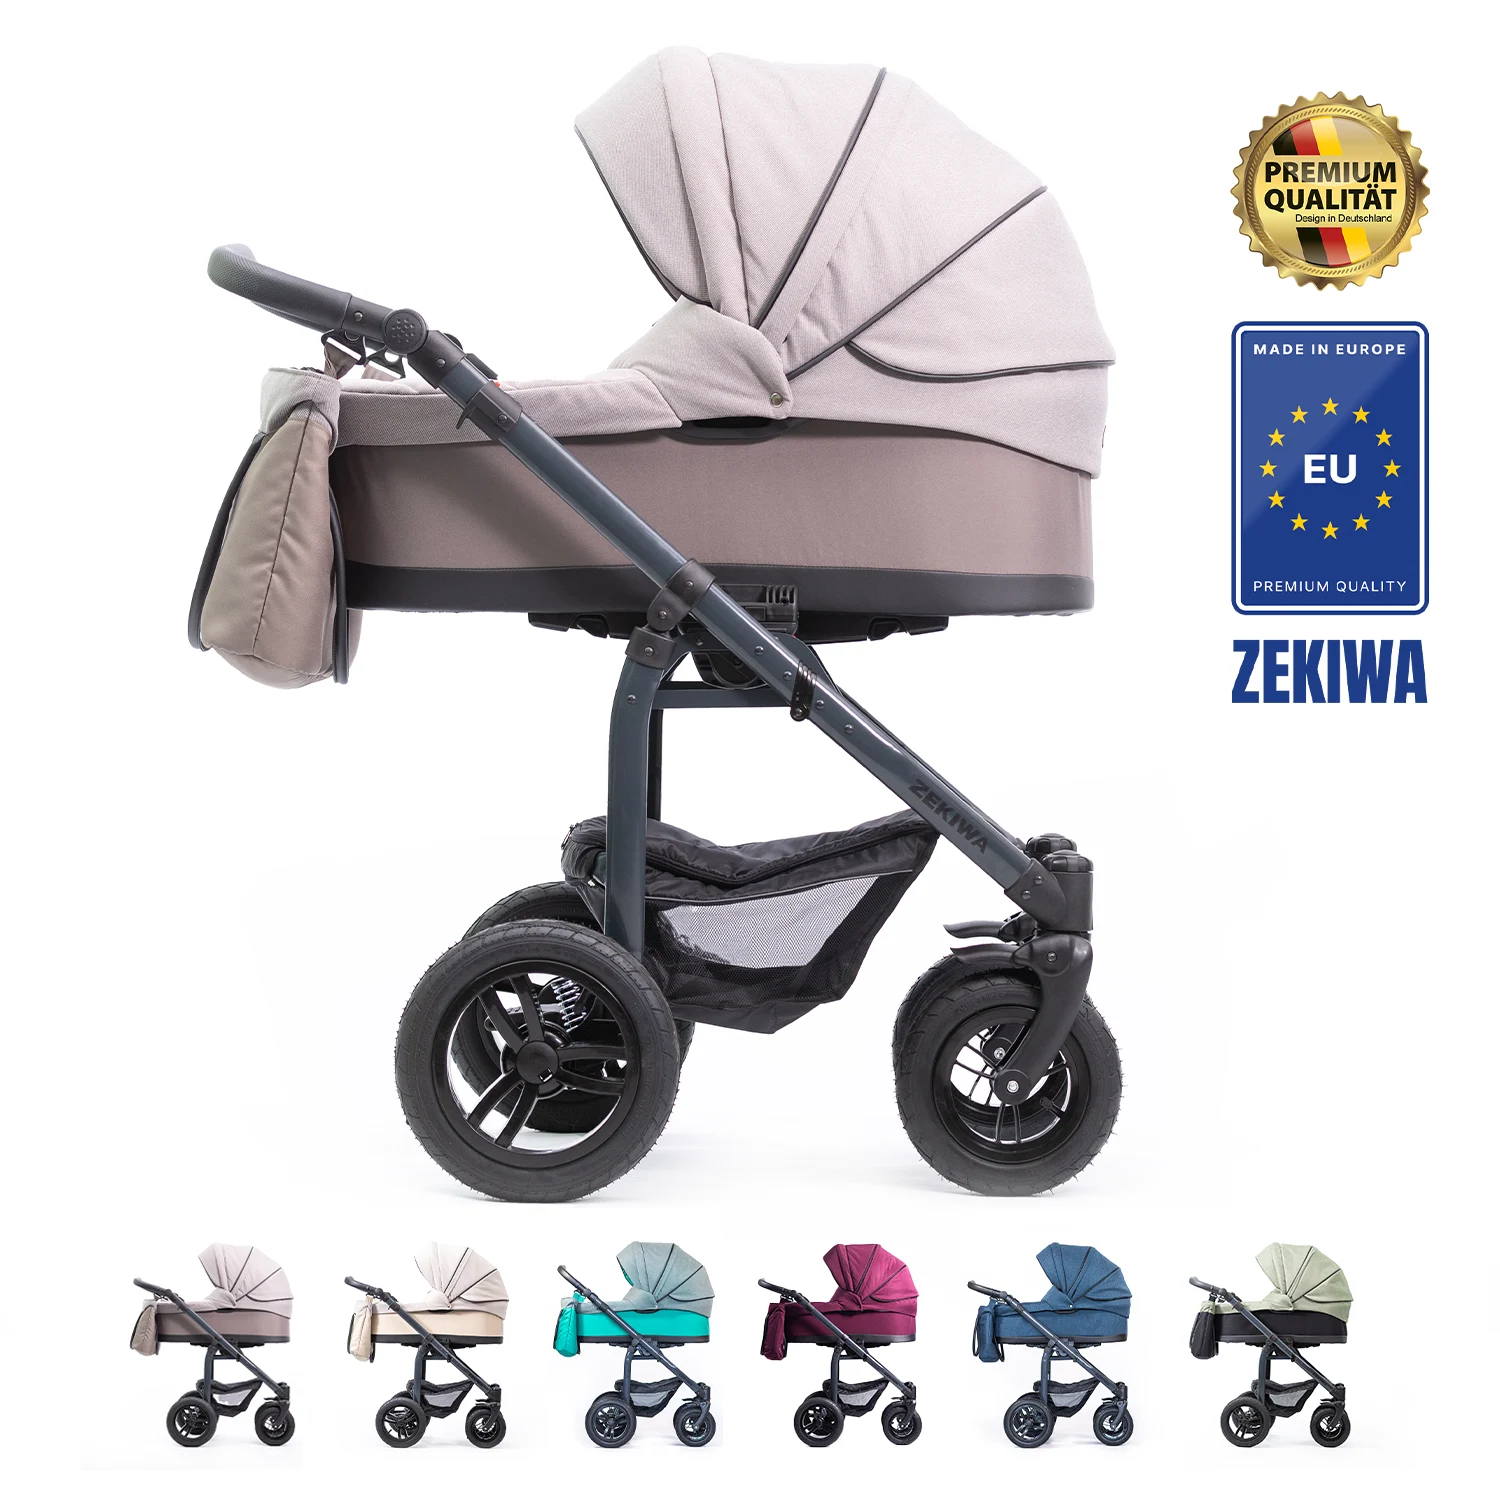 ZEKIWA Kinderwagen 3 in 1 [XL Wanne] - robustes Gestell mit Antischocksystem + Sportwagenaufsatz + Regenschutz + Insektenschutz + Wickeltasche | Saturn Royal